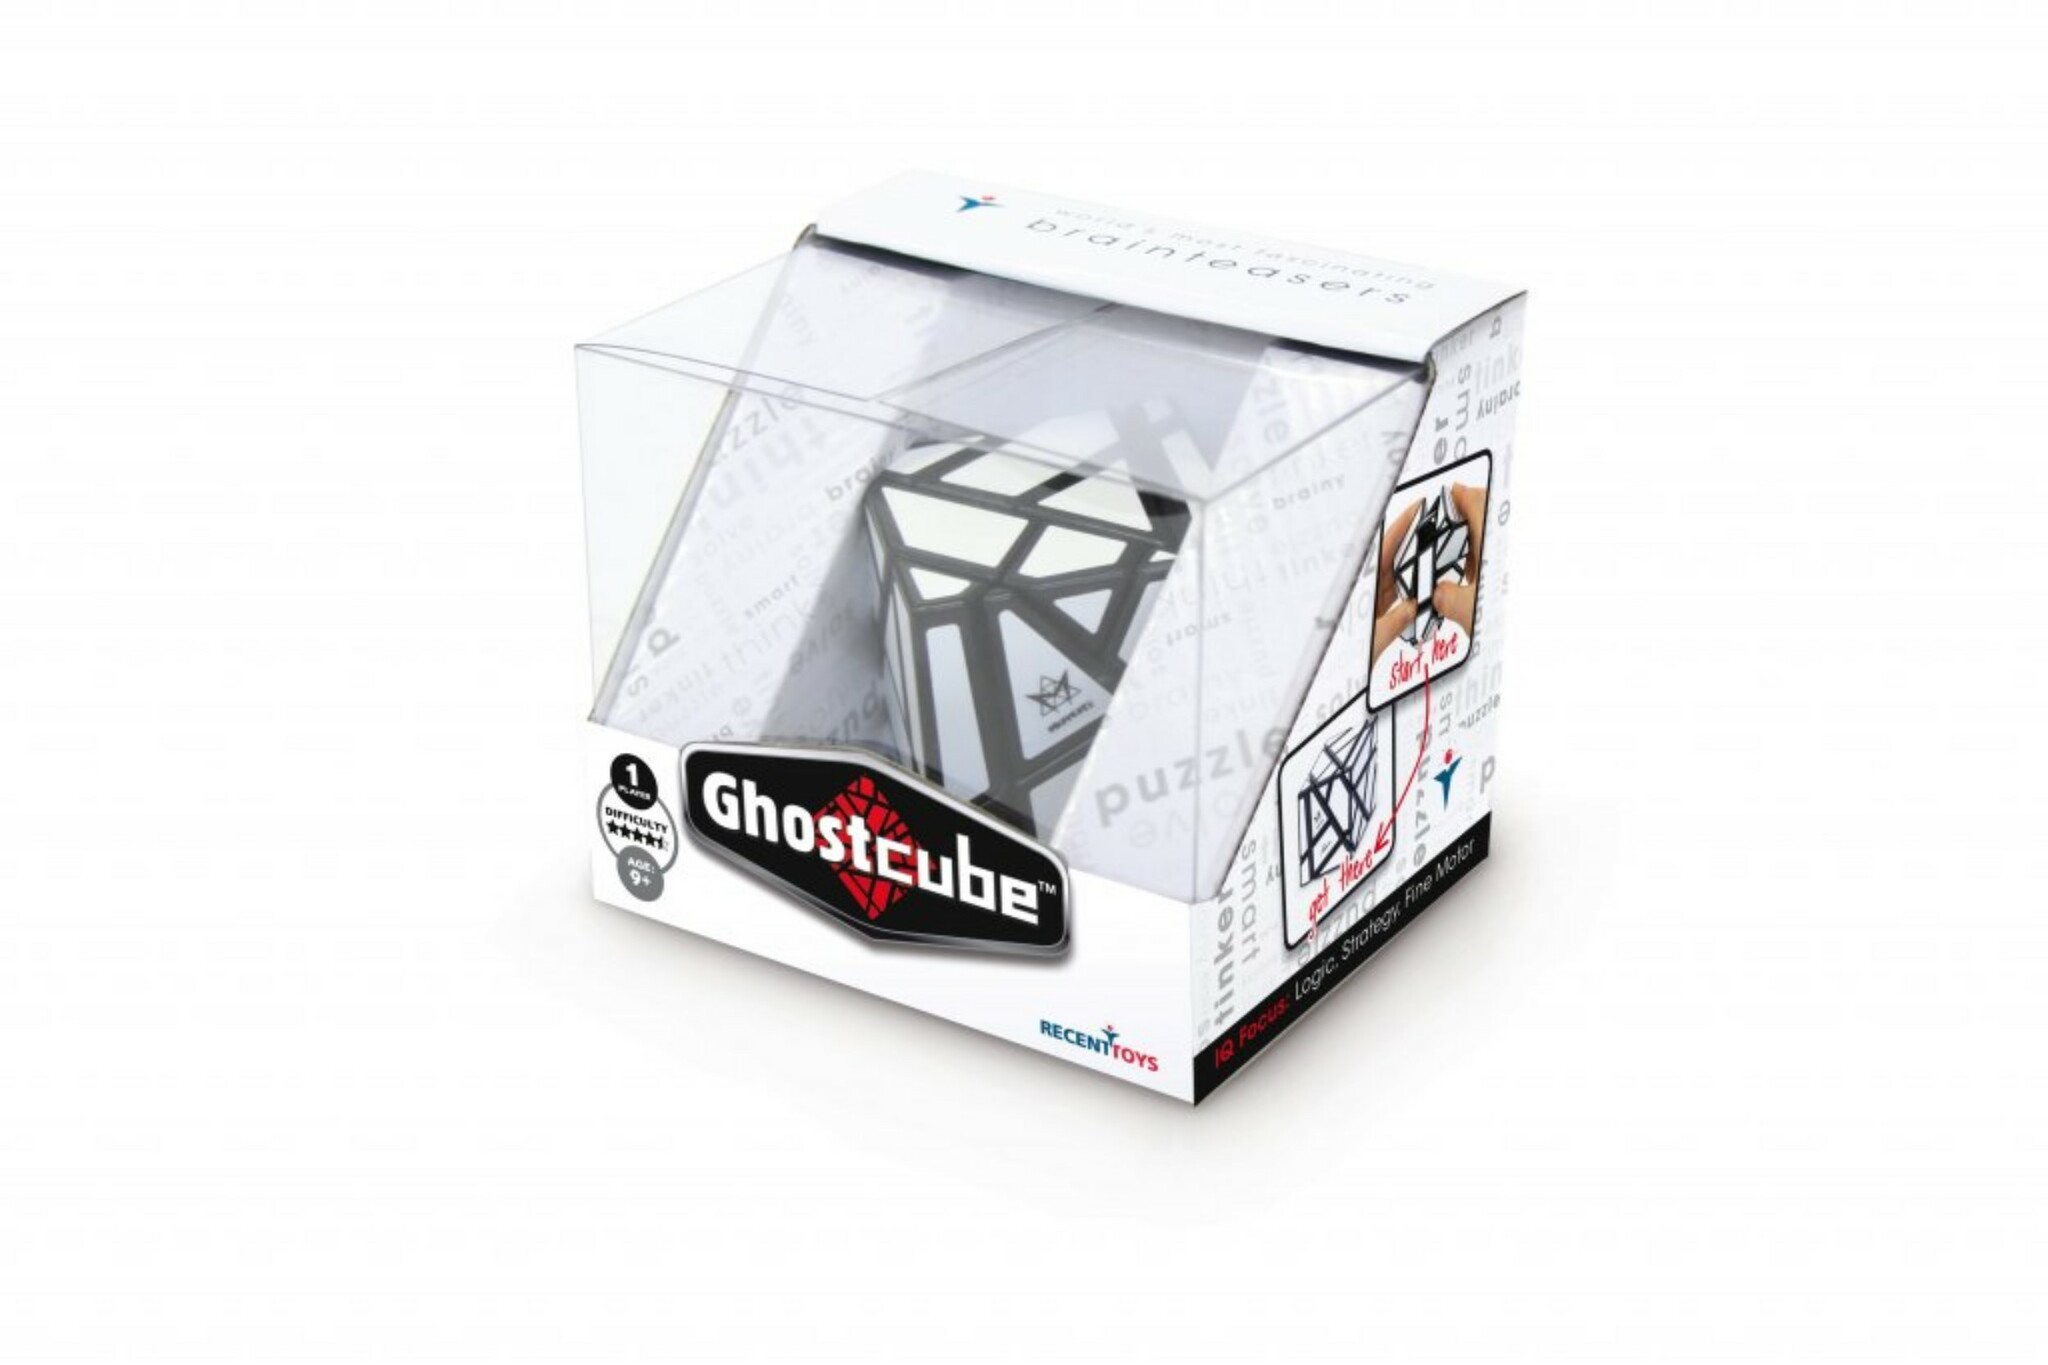 Ghost Cube – Kluring (Extremt svår) I förpackning